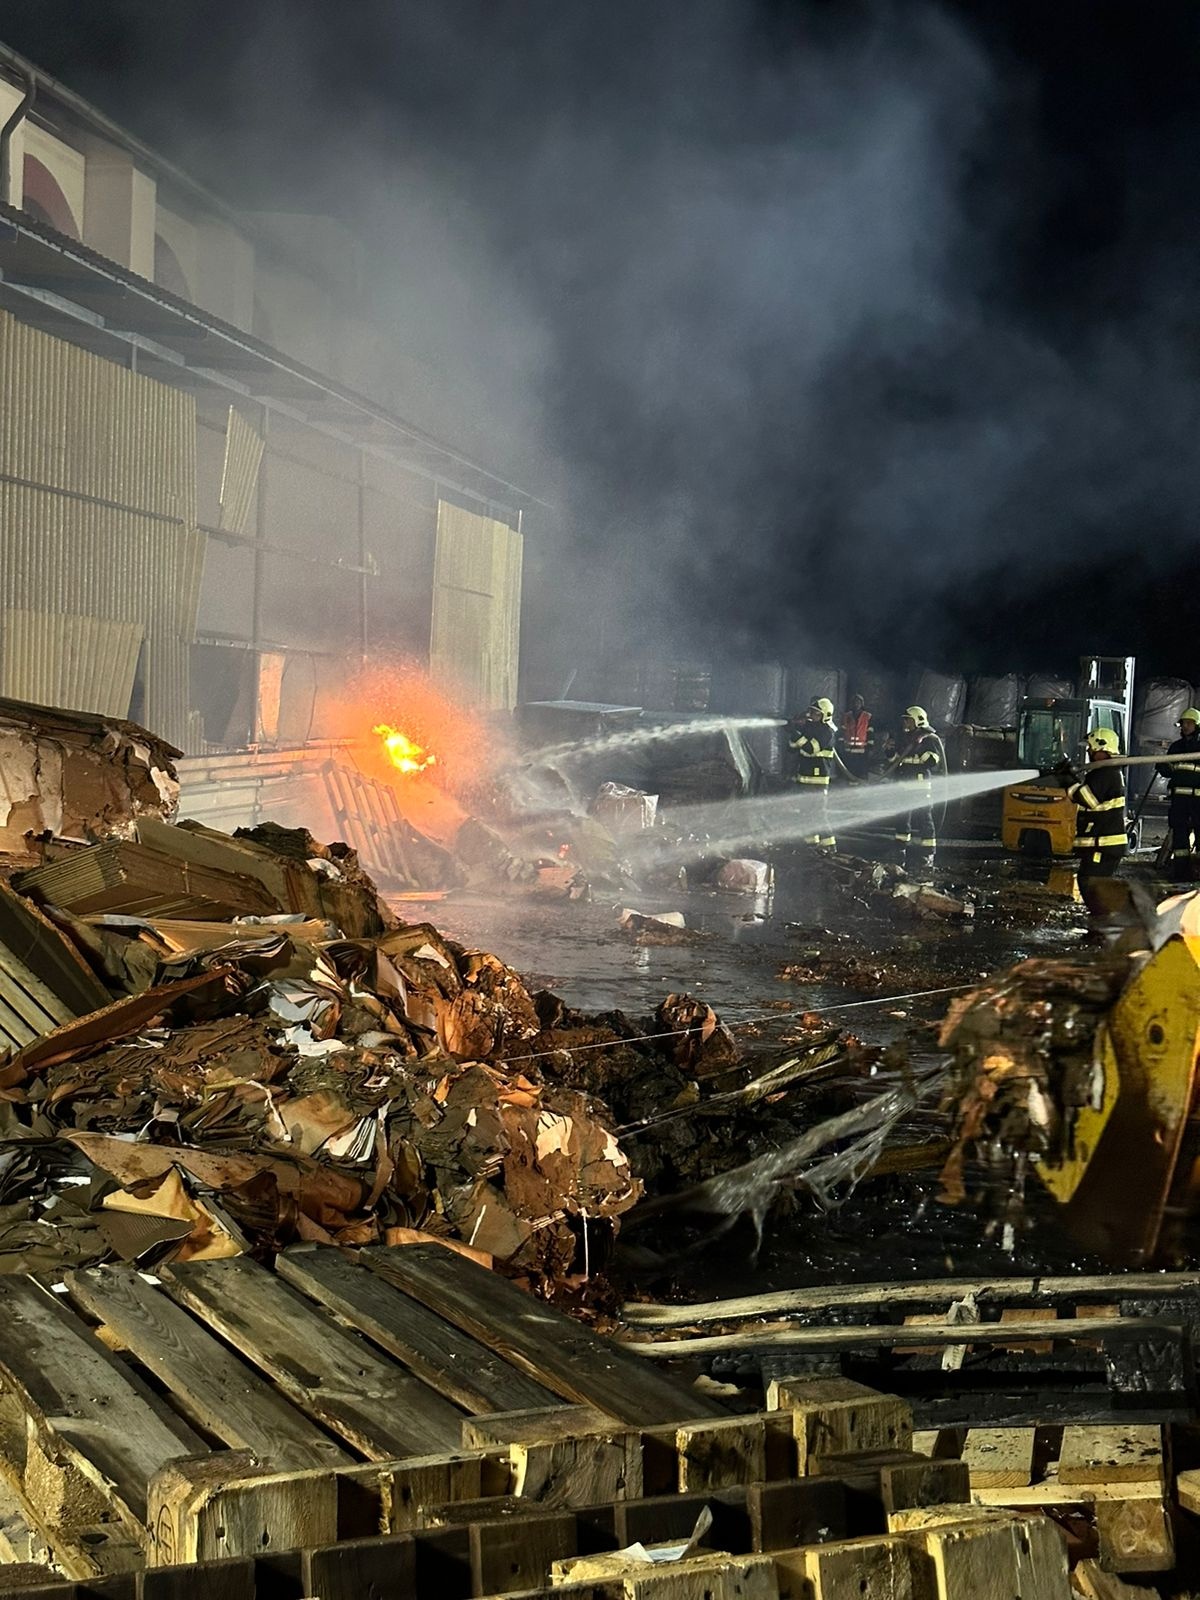 008-Požár skladovací haly v Brandýse nad Labem likvidovaný ve třetím poplachovém stupni.jpeg